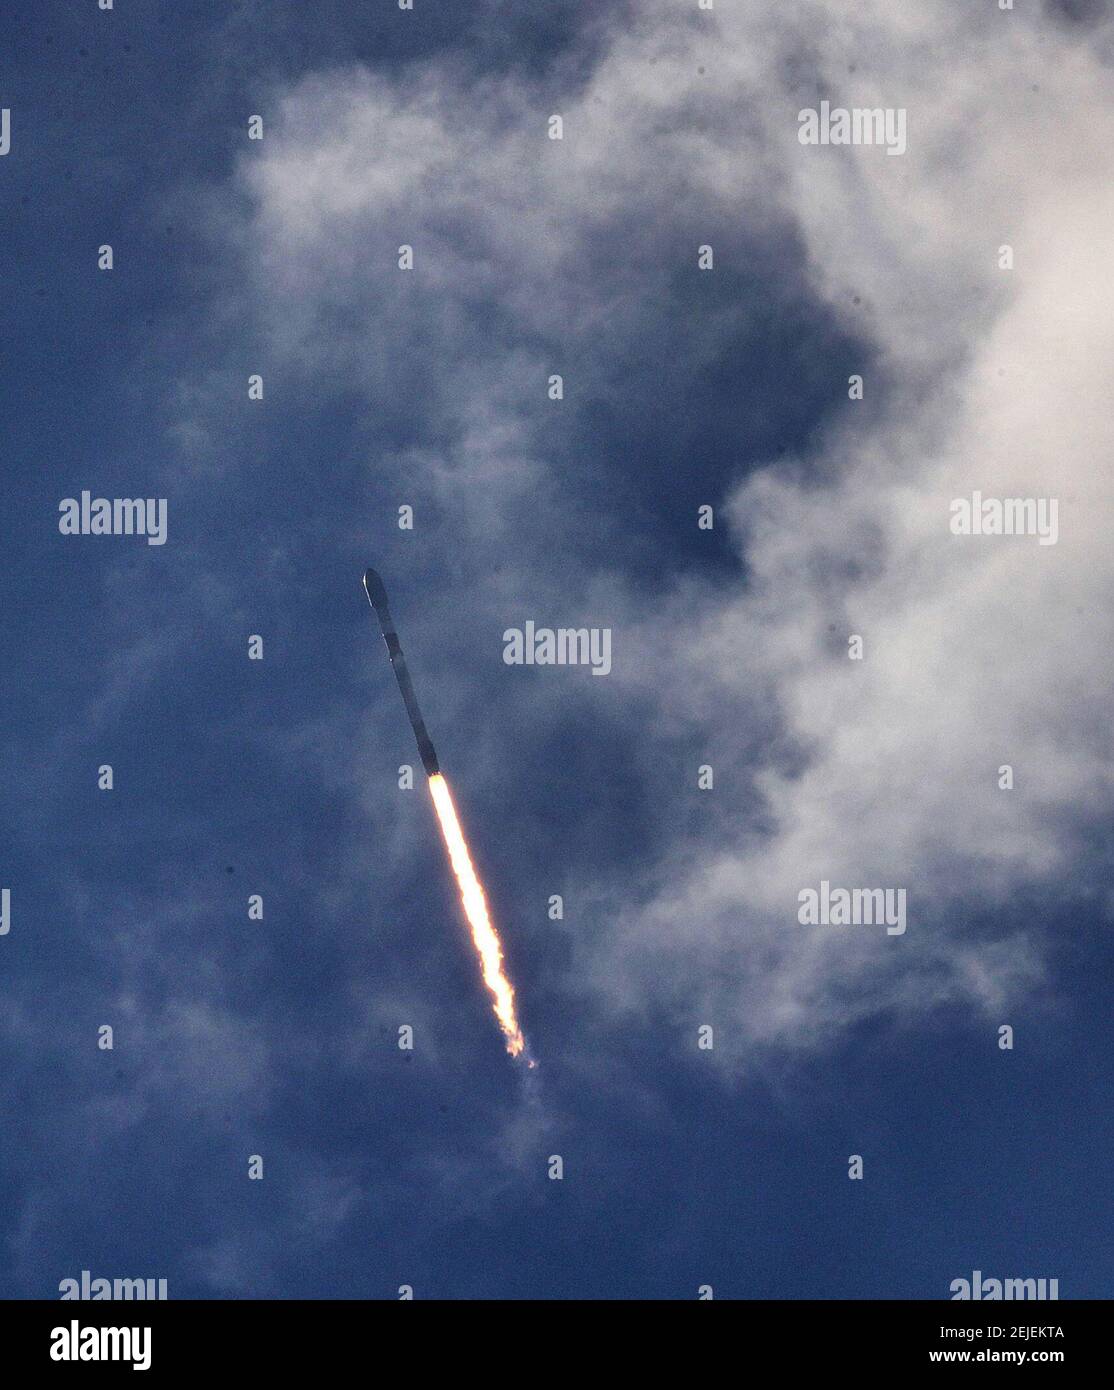 Une fusée SpaceX Falcon 9 traverse les nuages pendant le lancement depuis la station aérienne de Cape Canaveral en Floride, dans cette vue depuis la plage Playalinda à Canaveral National Seashore, le mercredi 29 janvier 2020. La fusée transportait 60 satellites Starlink, le quatrième lancement de la mission SpaceX Starlink. (Joe Burbank/Orlando Sentinel/TNS) Banque D'Images